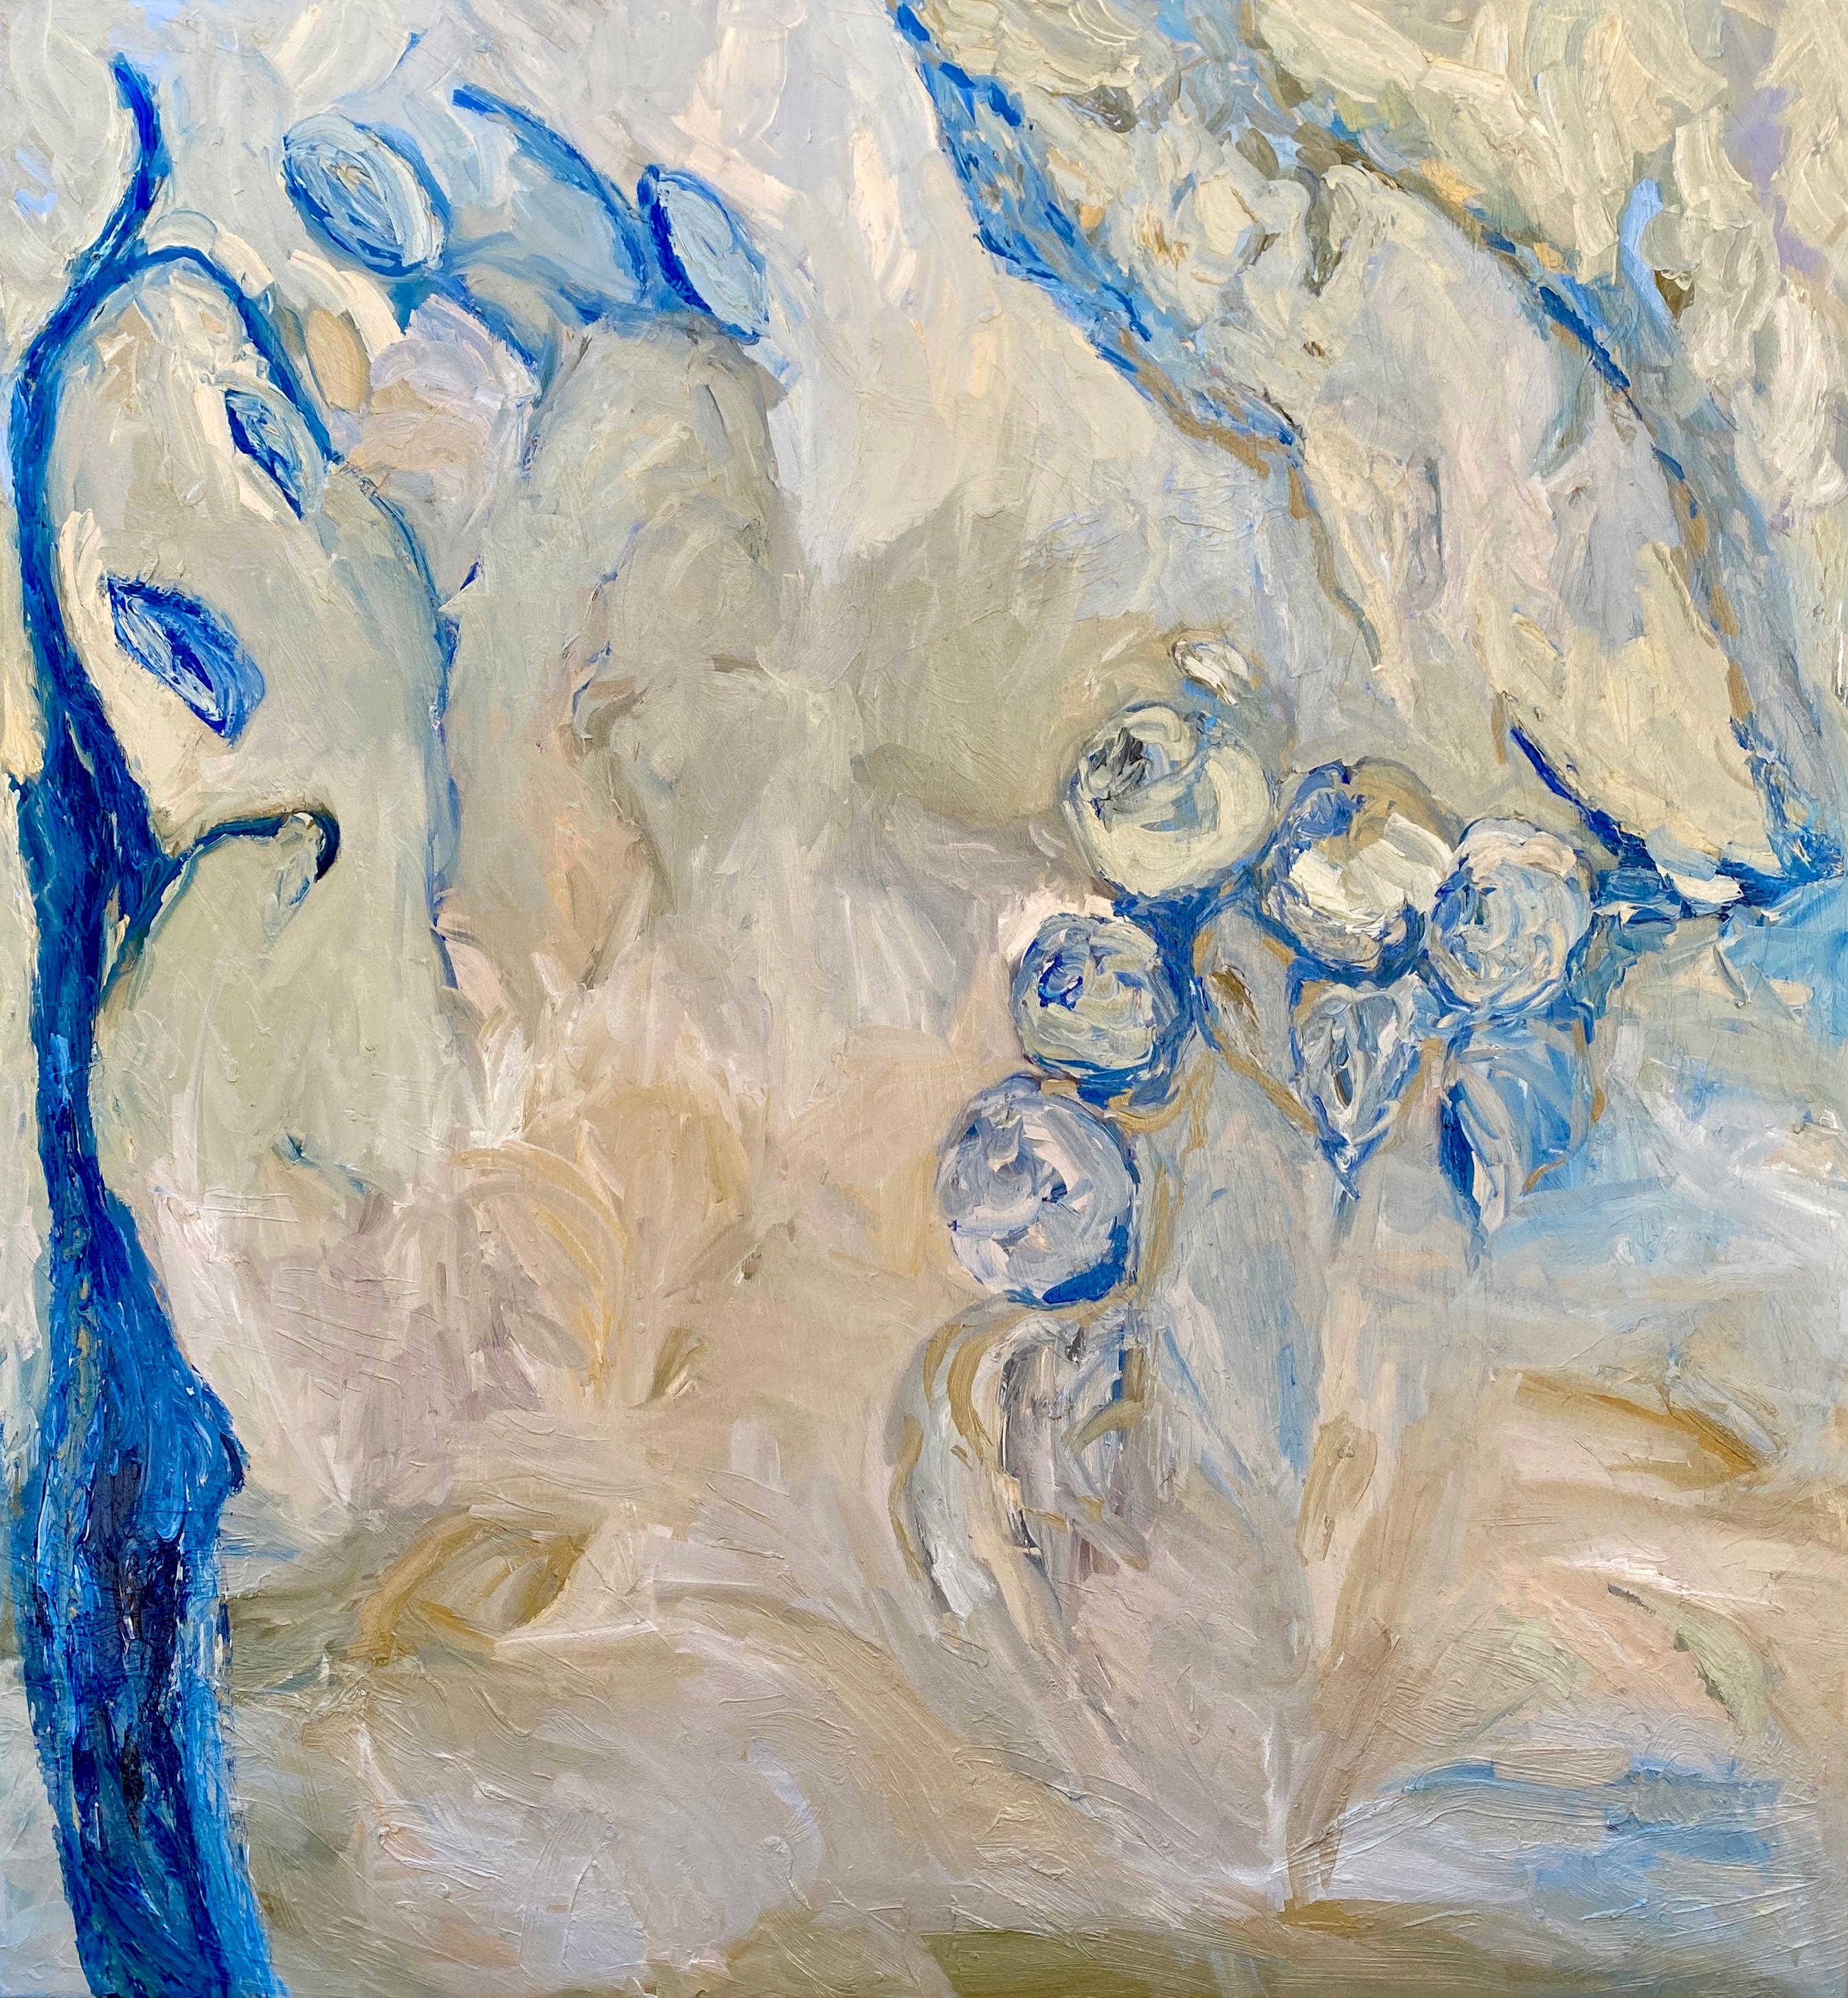 FRANCESCA OWEN  Landscape Painting - Blue Sanctuary. Large Contemporary Expressionist Oil Painting